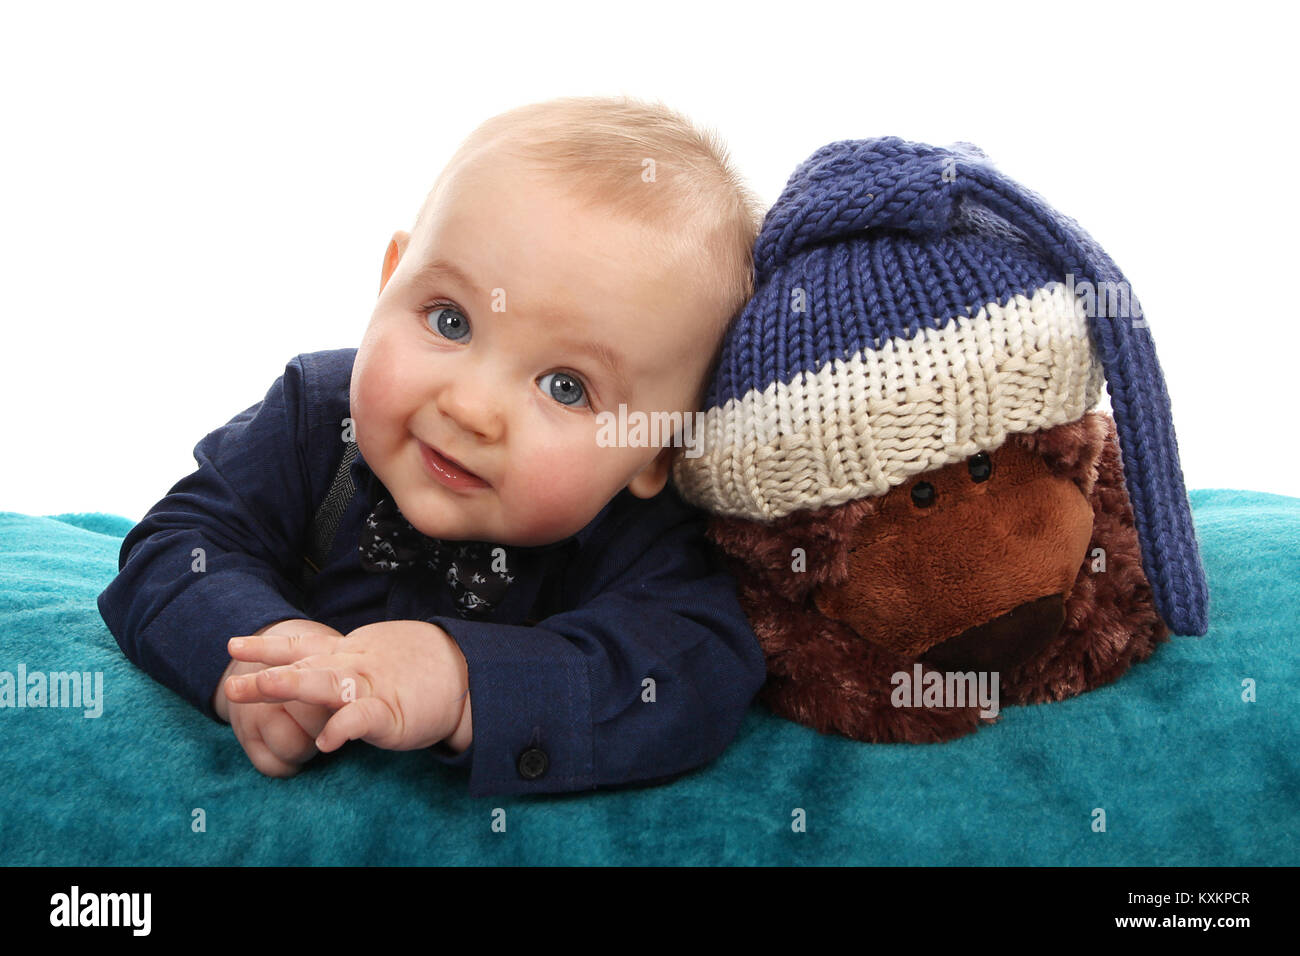 Happy baby boy on tummy, child development, happy childhood Stock Photo